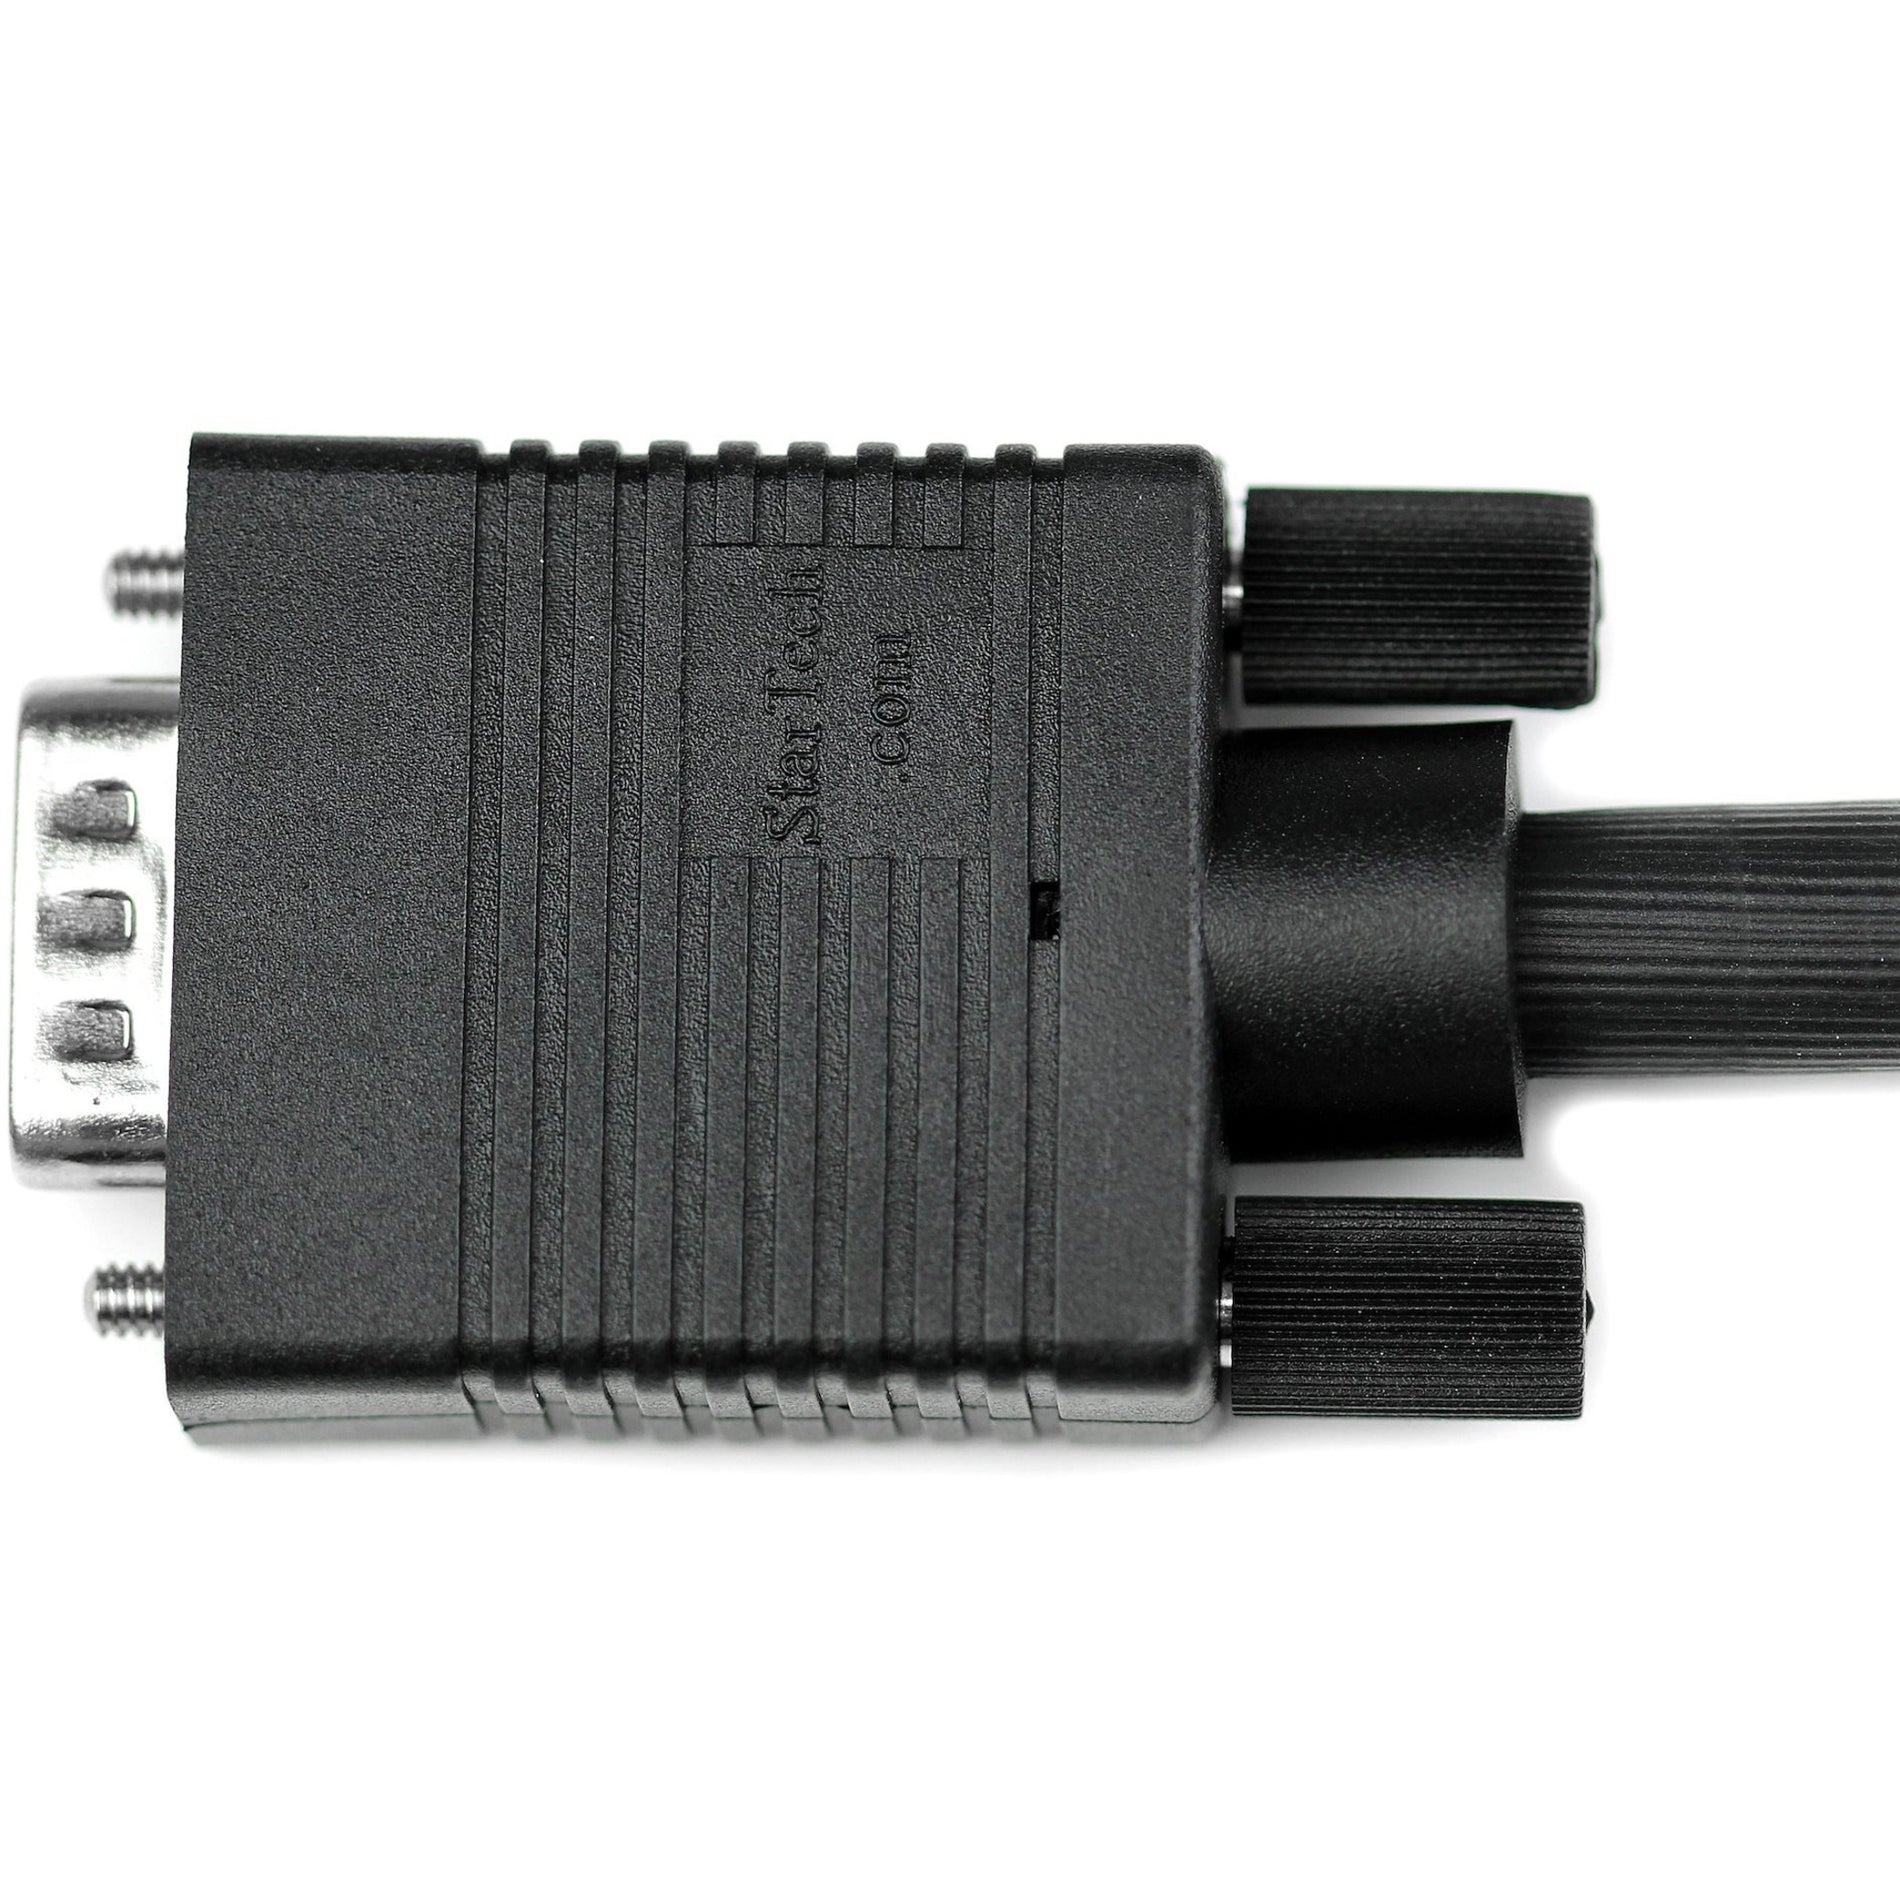 星美科技 MXT101MMH100 同轴 VGA 显示器电缆 100 英尺 - 高分辨率 SVGA 成型 电磁干扰保护 铁氧体珠